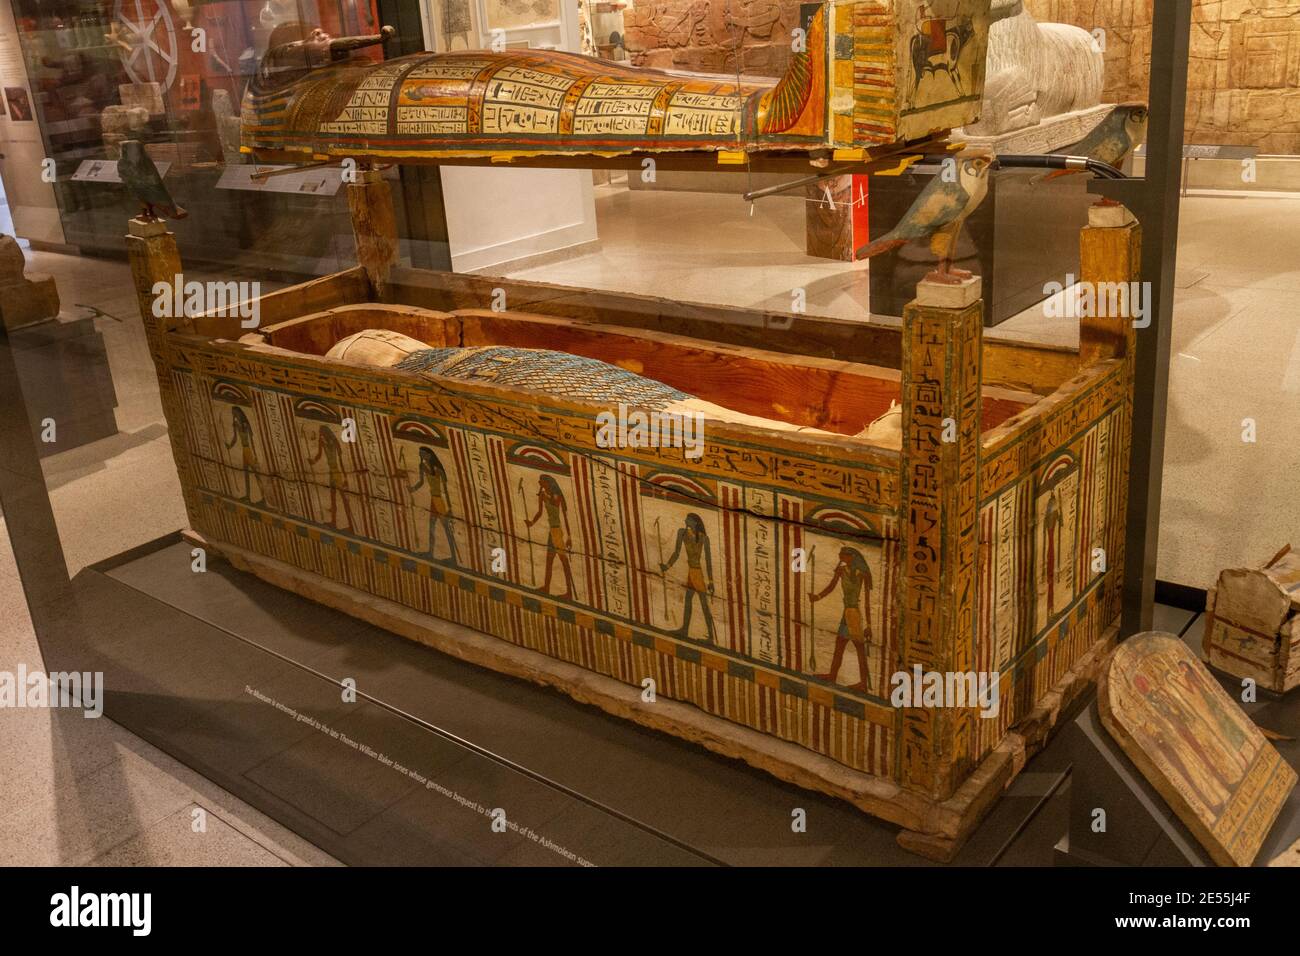 Nid de trois cercueils de Djeddjehutyiuefenkh, du Grand Temple, des Thèbes occidentaux, Musée Ashmoléen, Oxford UK. Banque D'Images